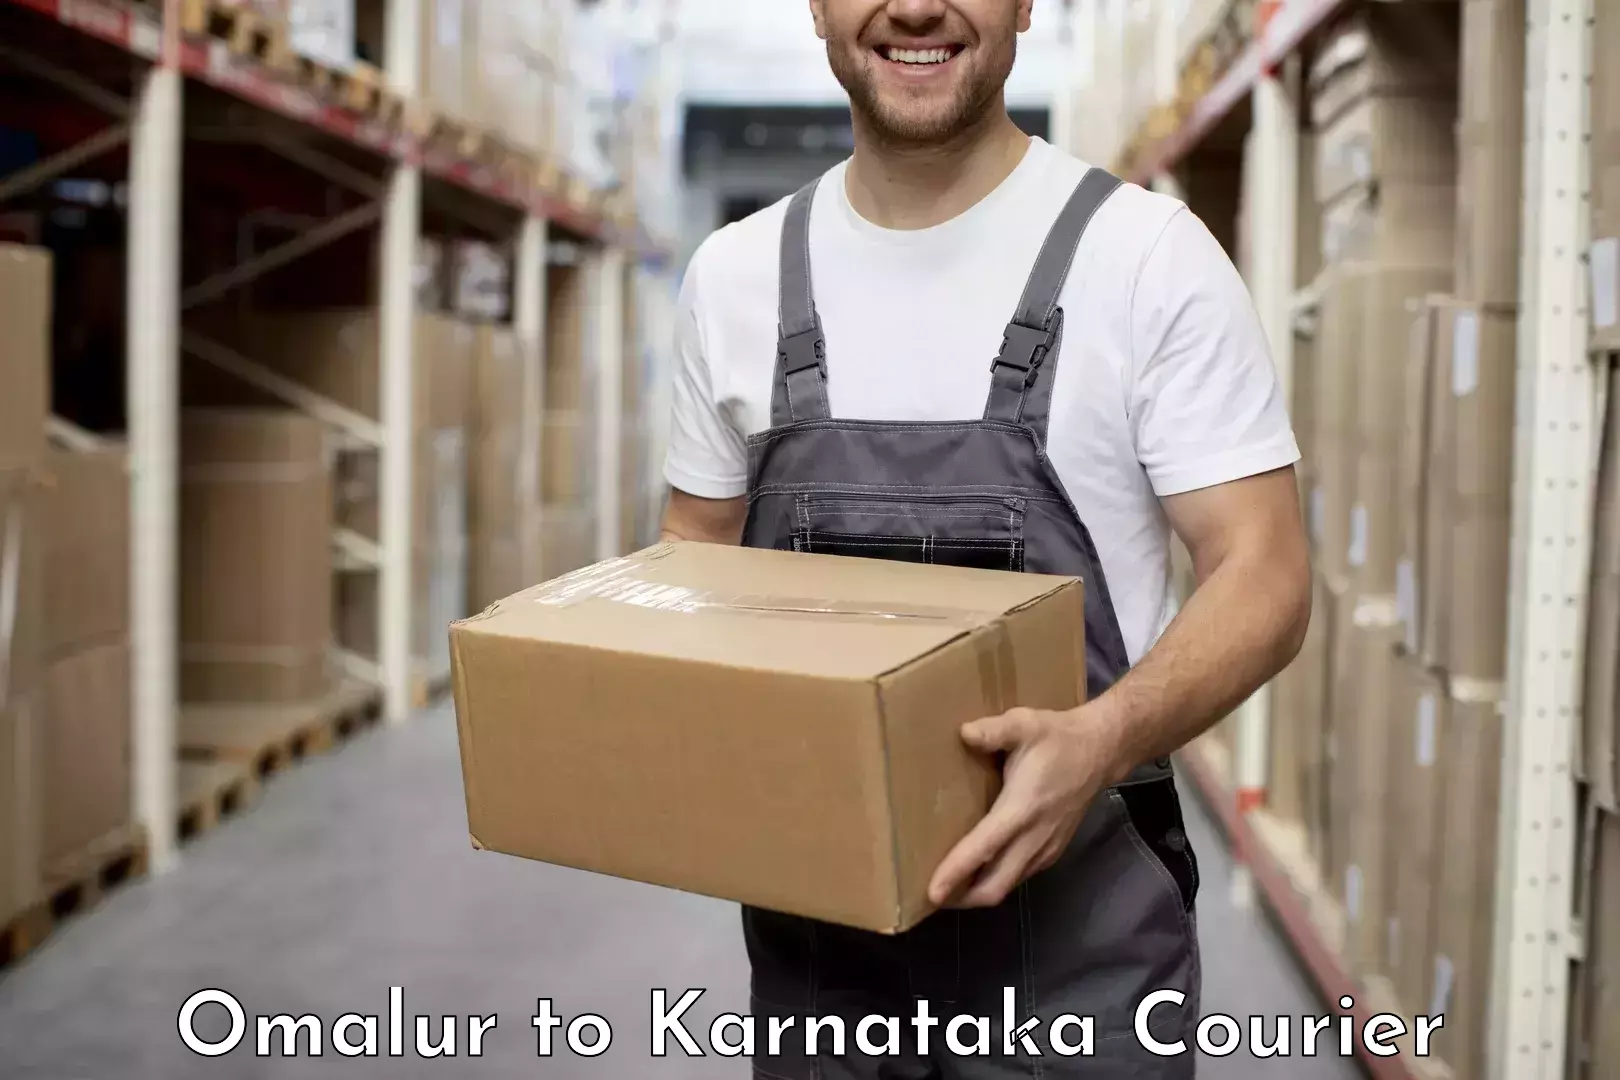 24-hour courier service Omalur to Chikkanayakanahalli